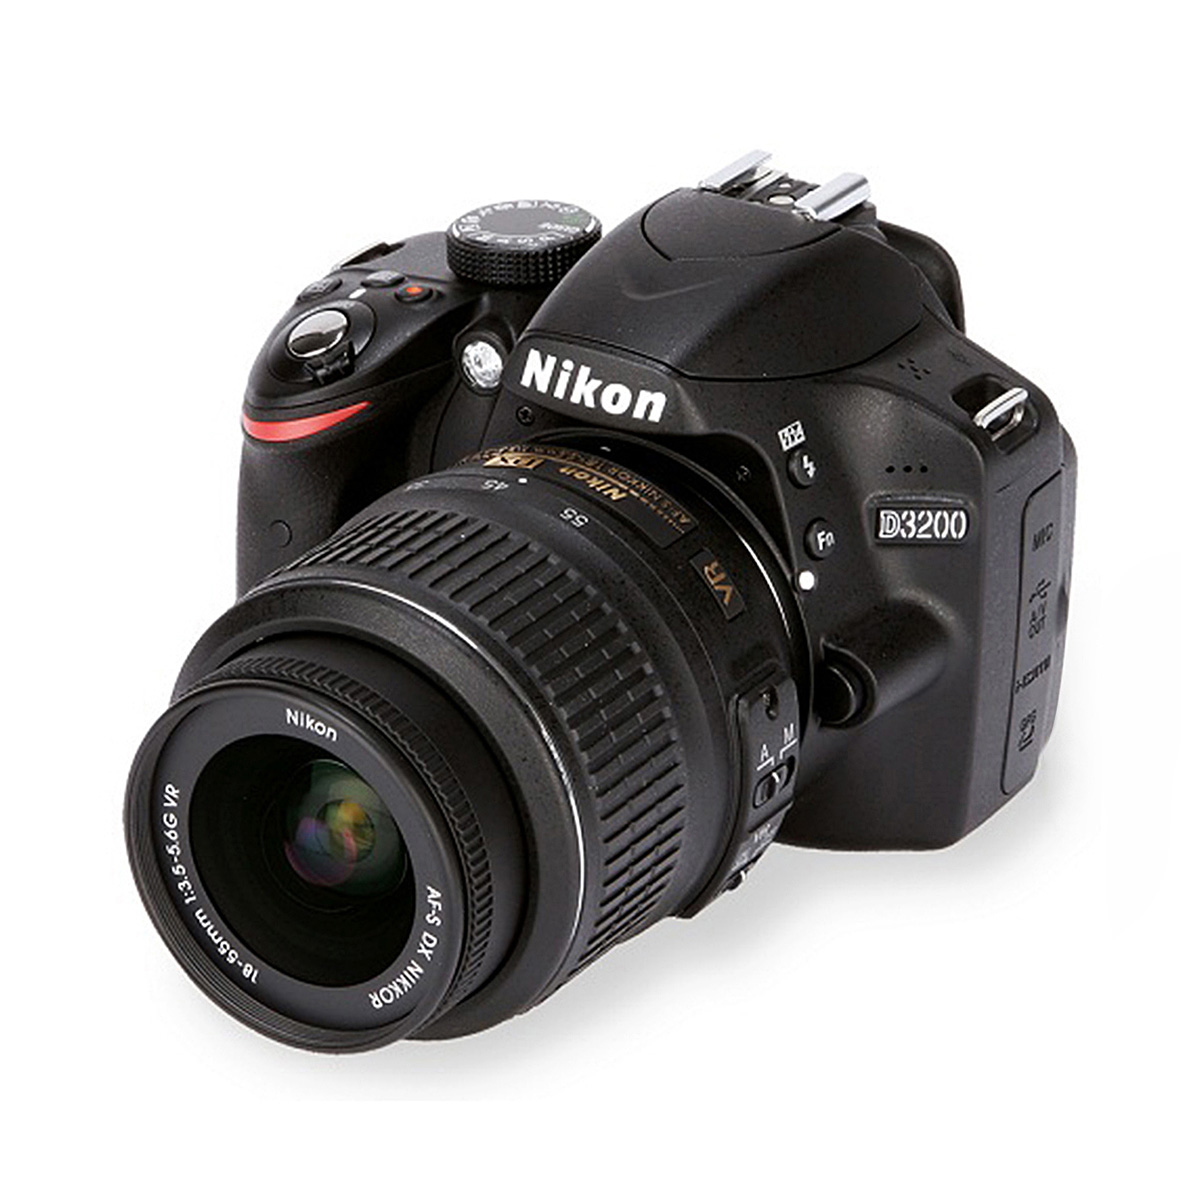 Nikon D7500 DSLR Price In Bangladesh 2022 - Daraz.com.bd